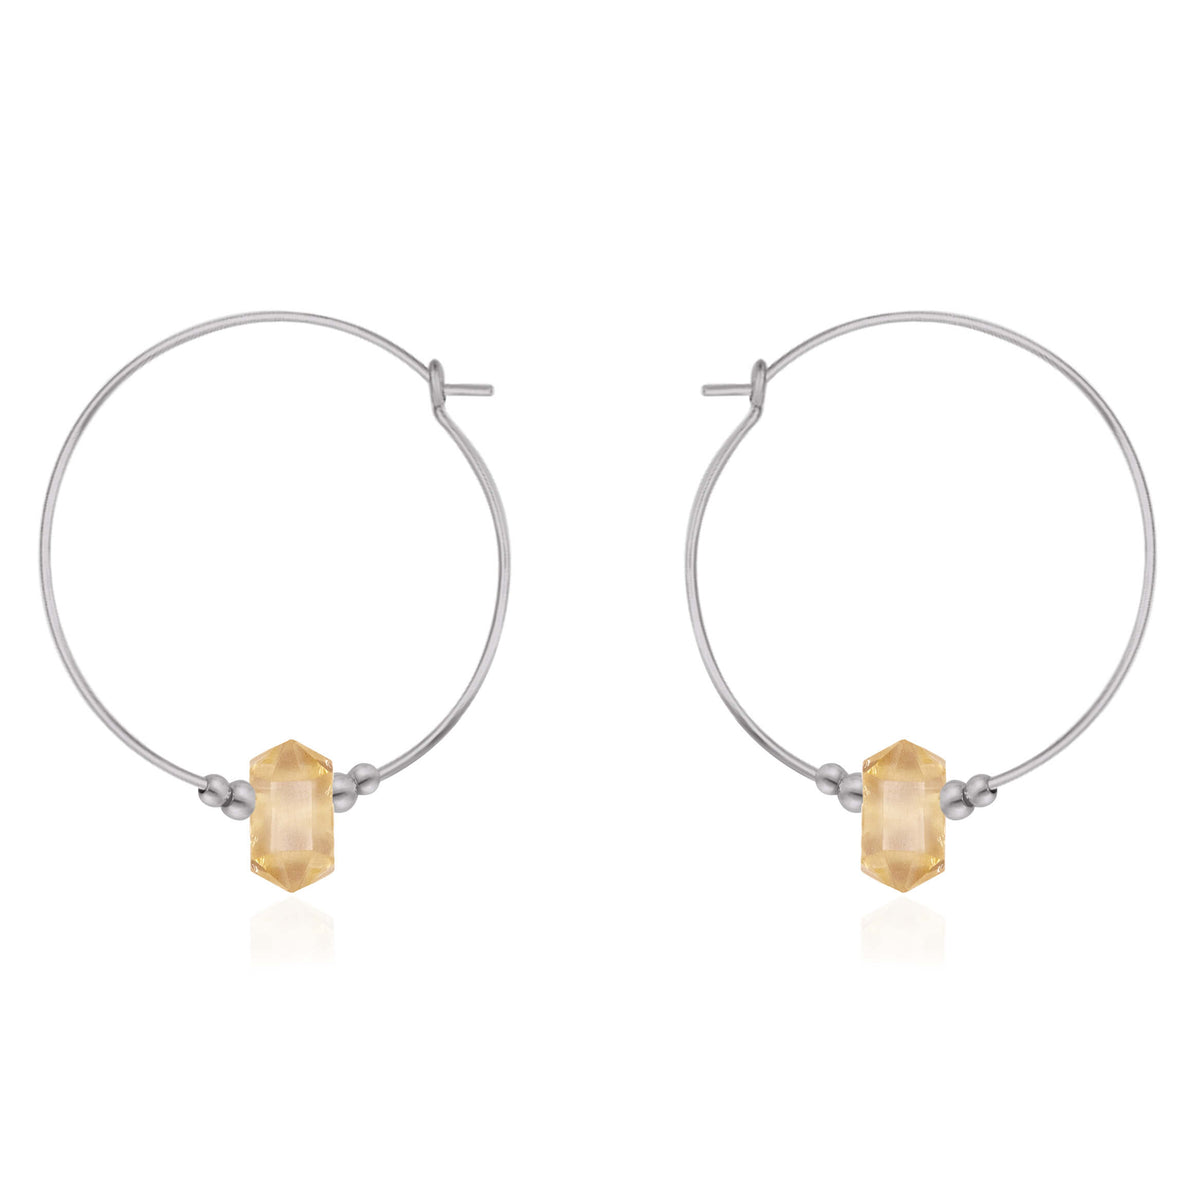 Large Double Terminated Crystal Hoop Earrings - Citrine - Stainless Steel - Luna Tide Handmade Jewellery